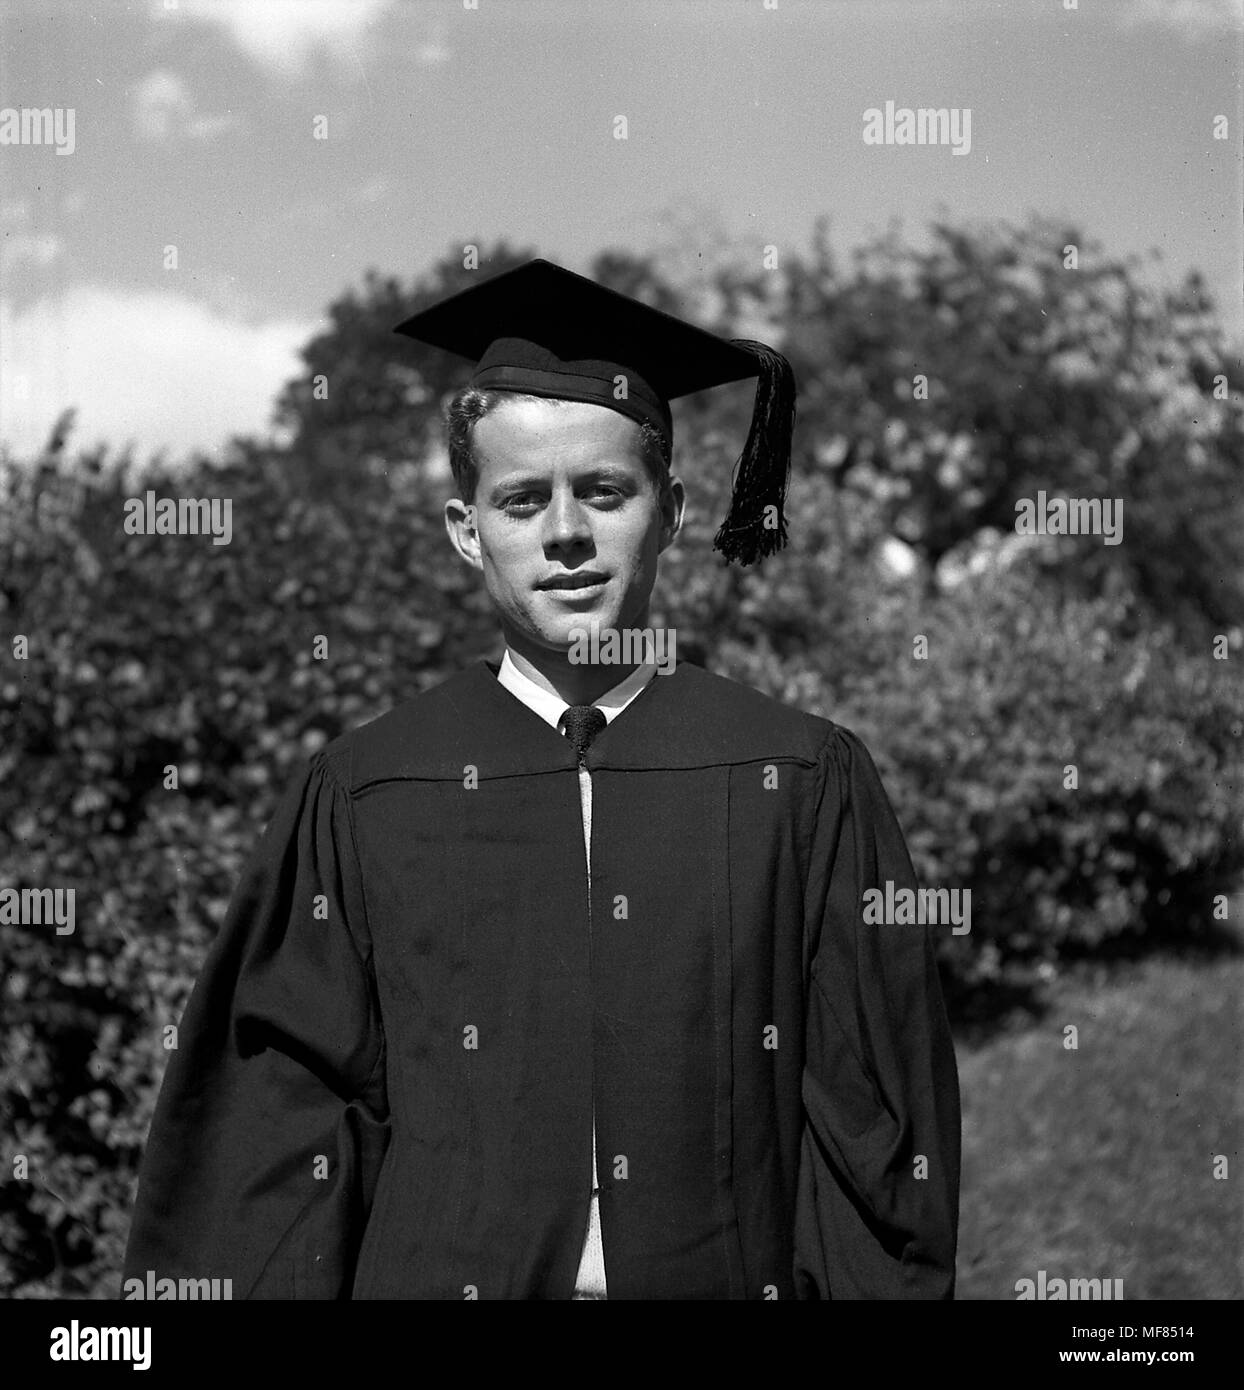 PC 20 20 Juni 1940 John F. Kennedy tragen Regalia bei seinem Abschluss in Harvard N. Bitte schreiben Sie 'John F. Kennedy Presidential Library und Museum, Boston' Stockfoto